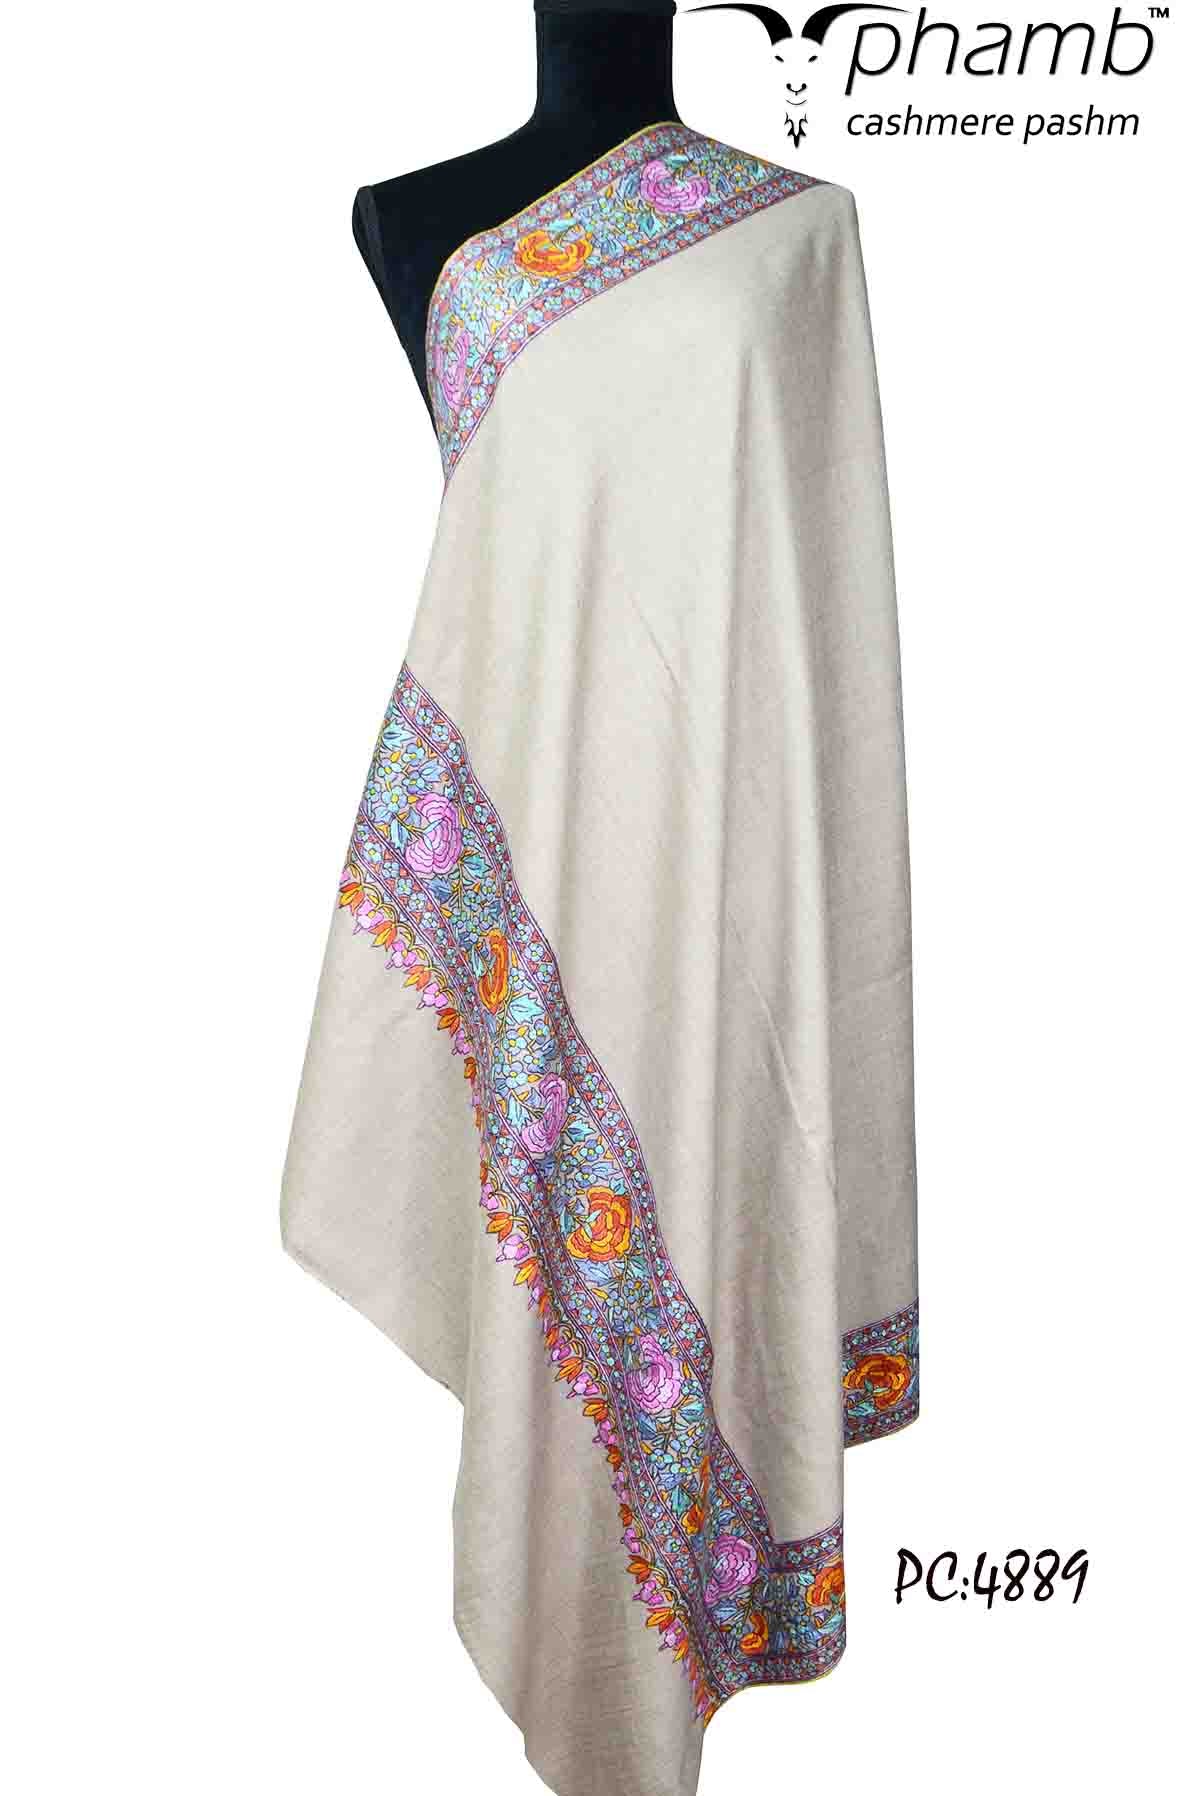 greyish emb. shawl - 4889